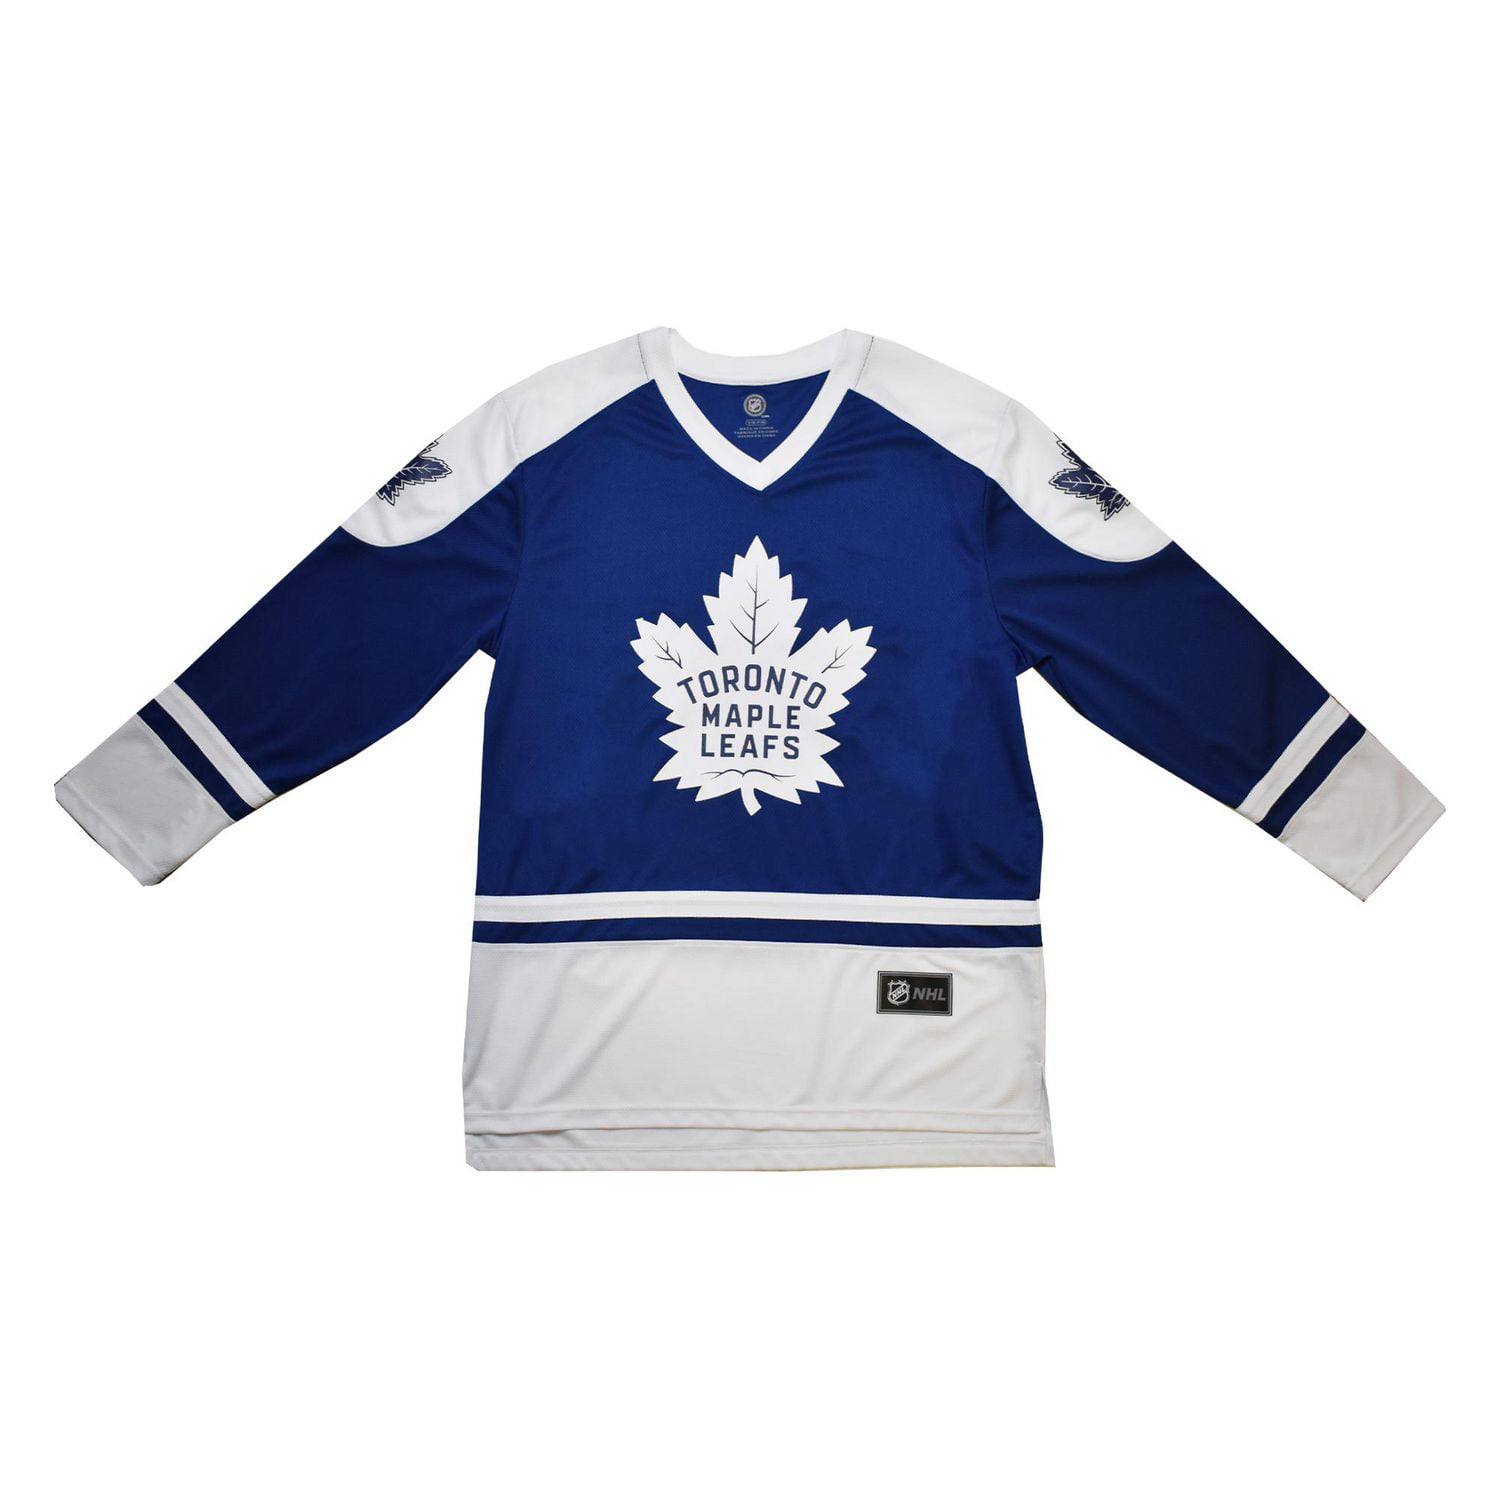 Men's NHL Toronto Maple Leafs Auston Matthews Jersey, Sizes: L/XL 